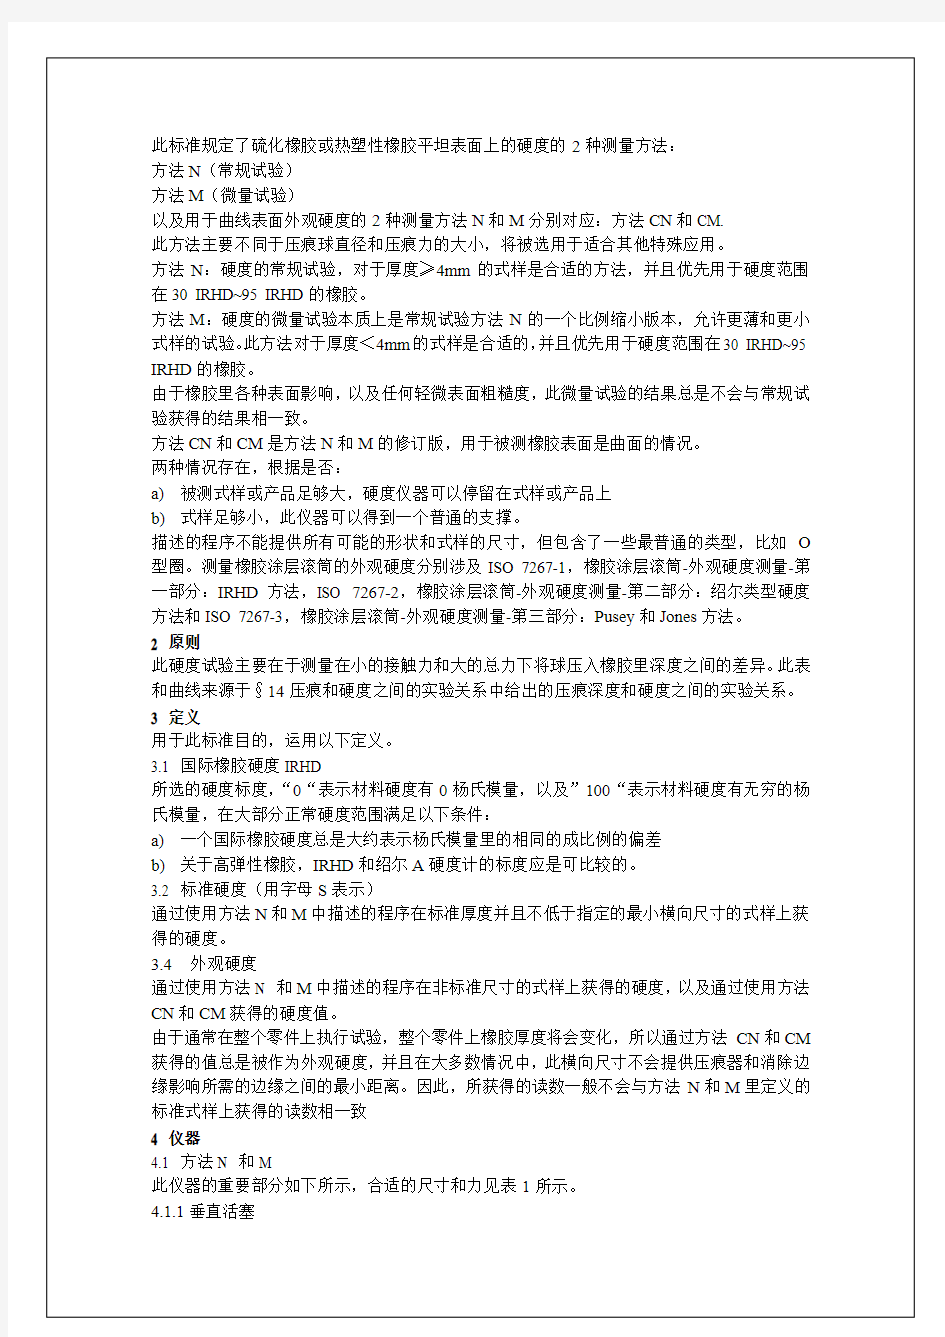 沃尔沃标准VCS102431159硬度中文